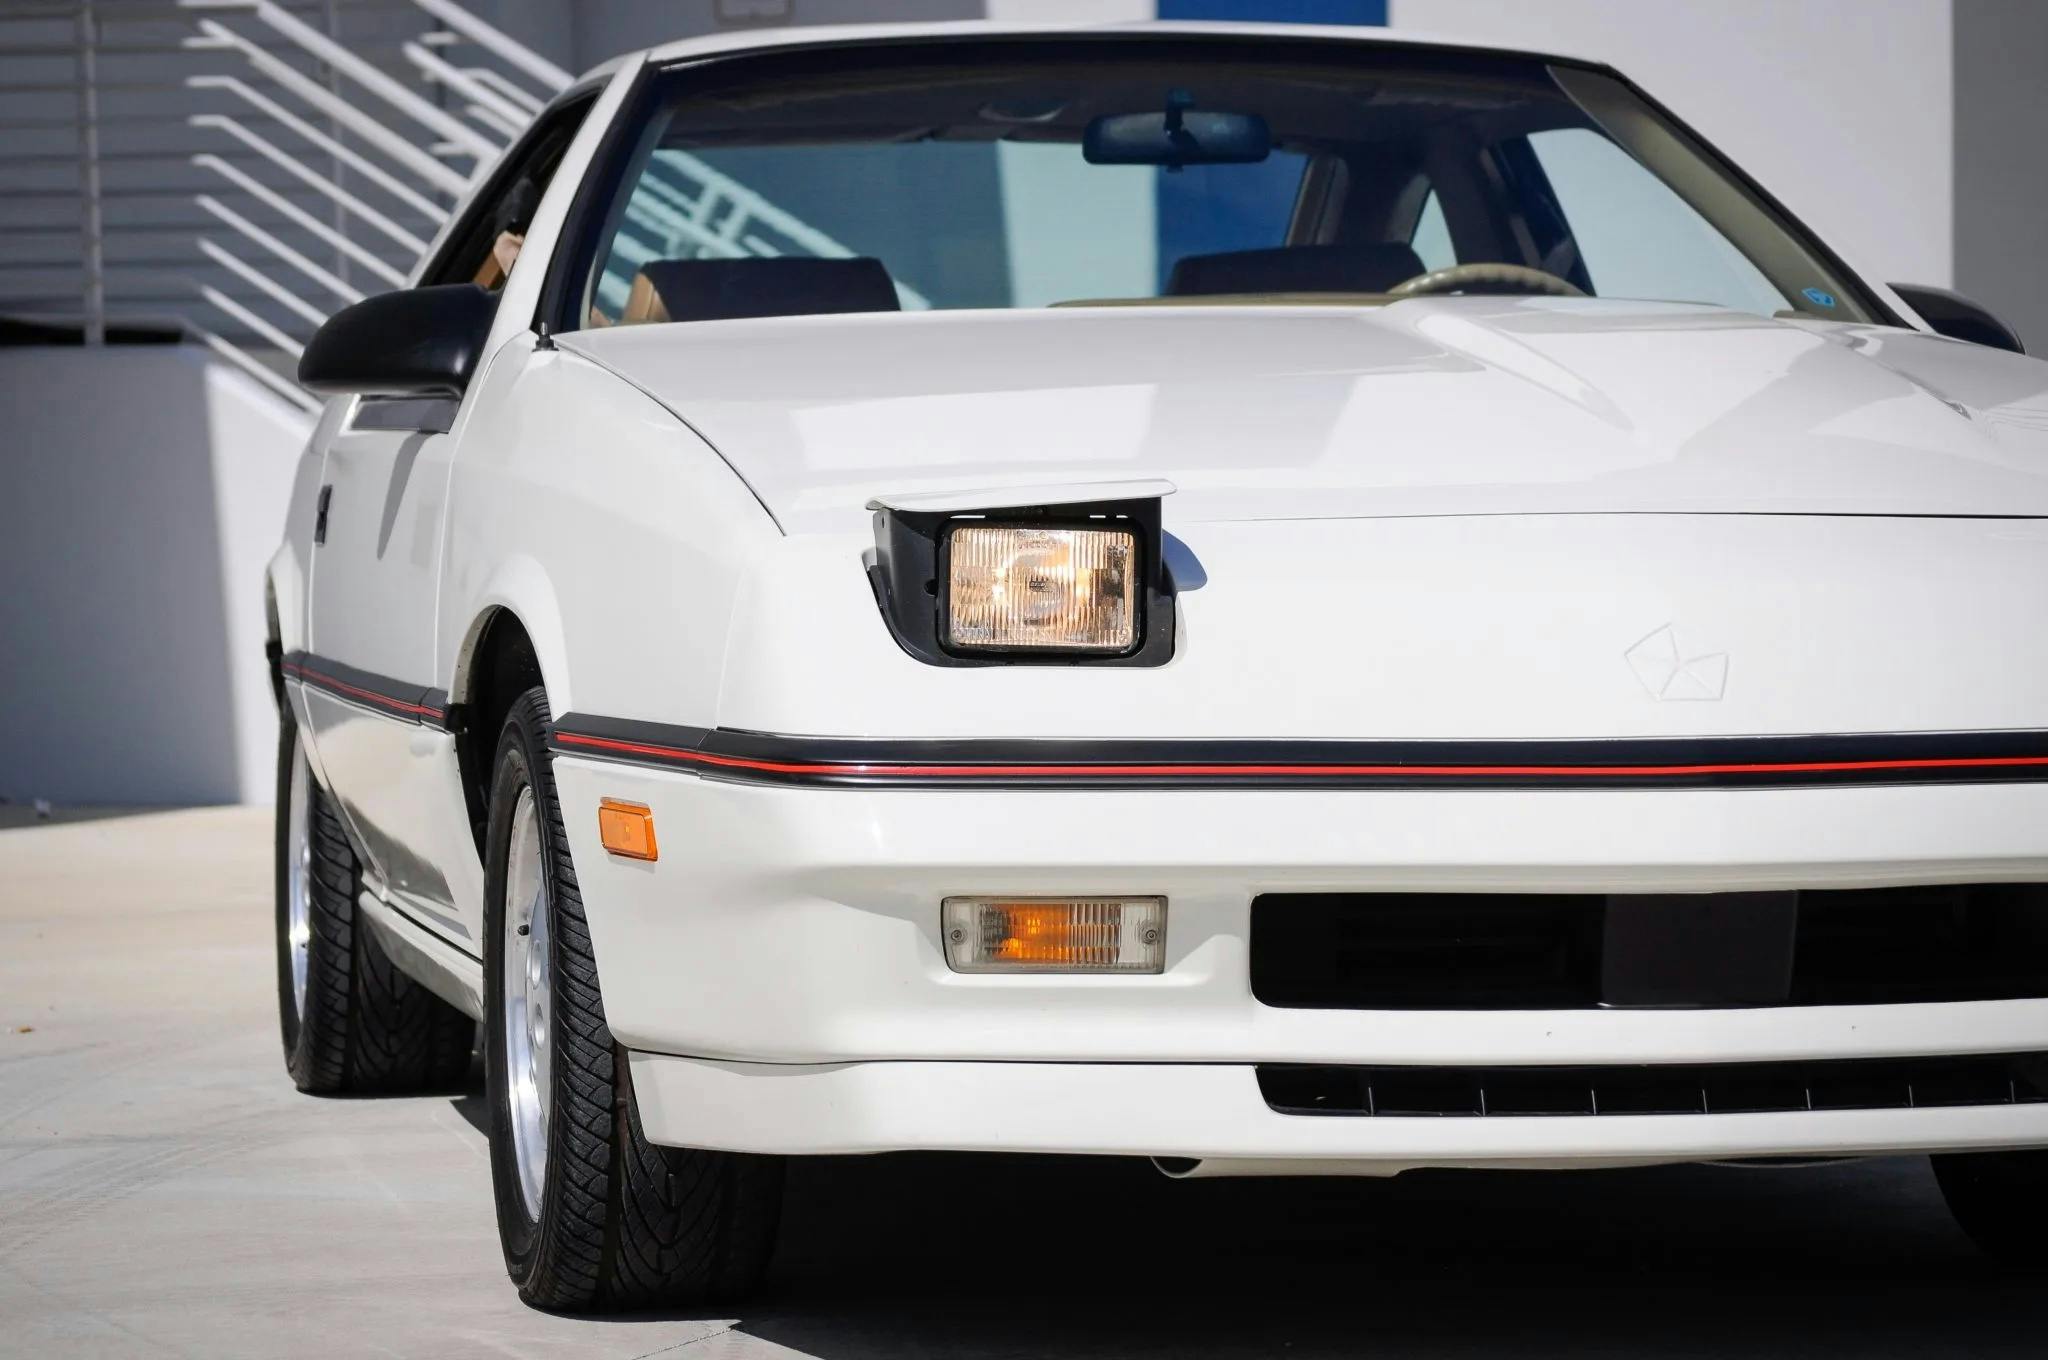 1987 Dodge Daytona Shelby Z front pop up light